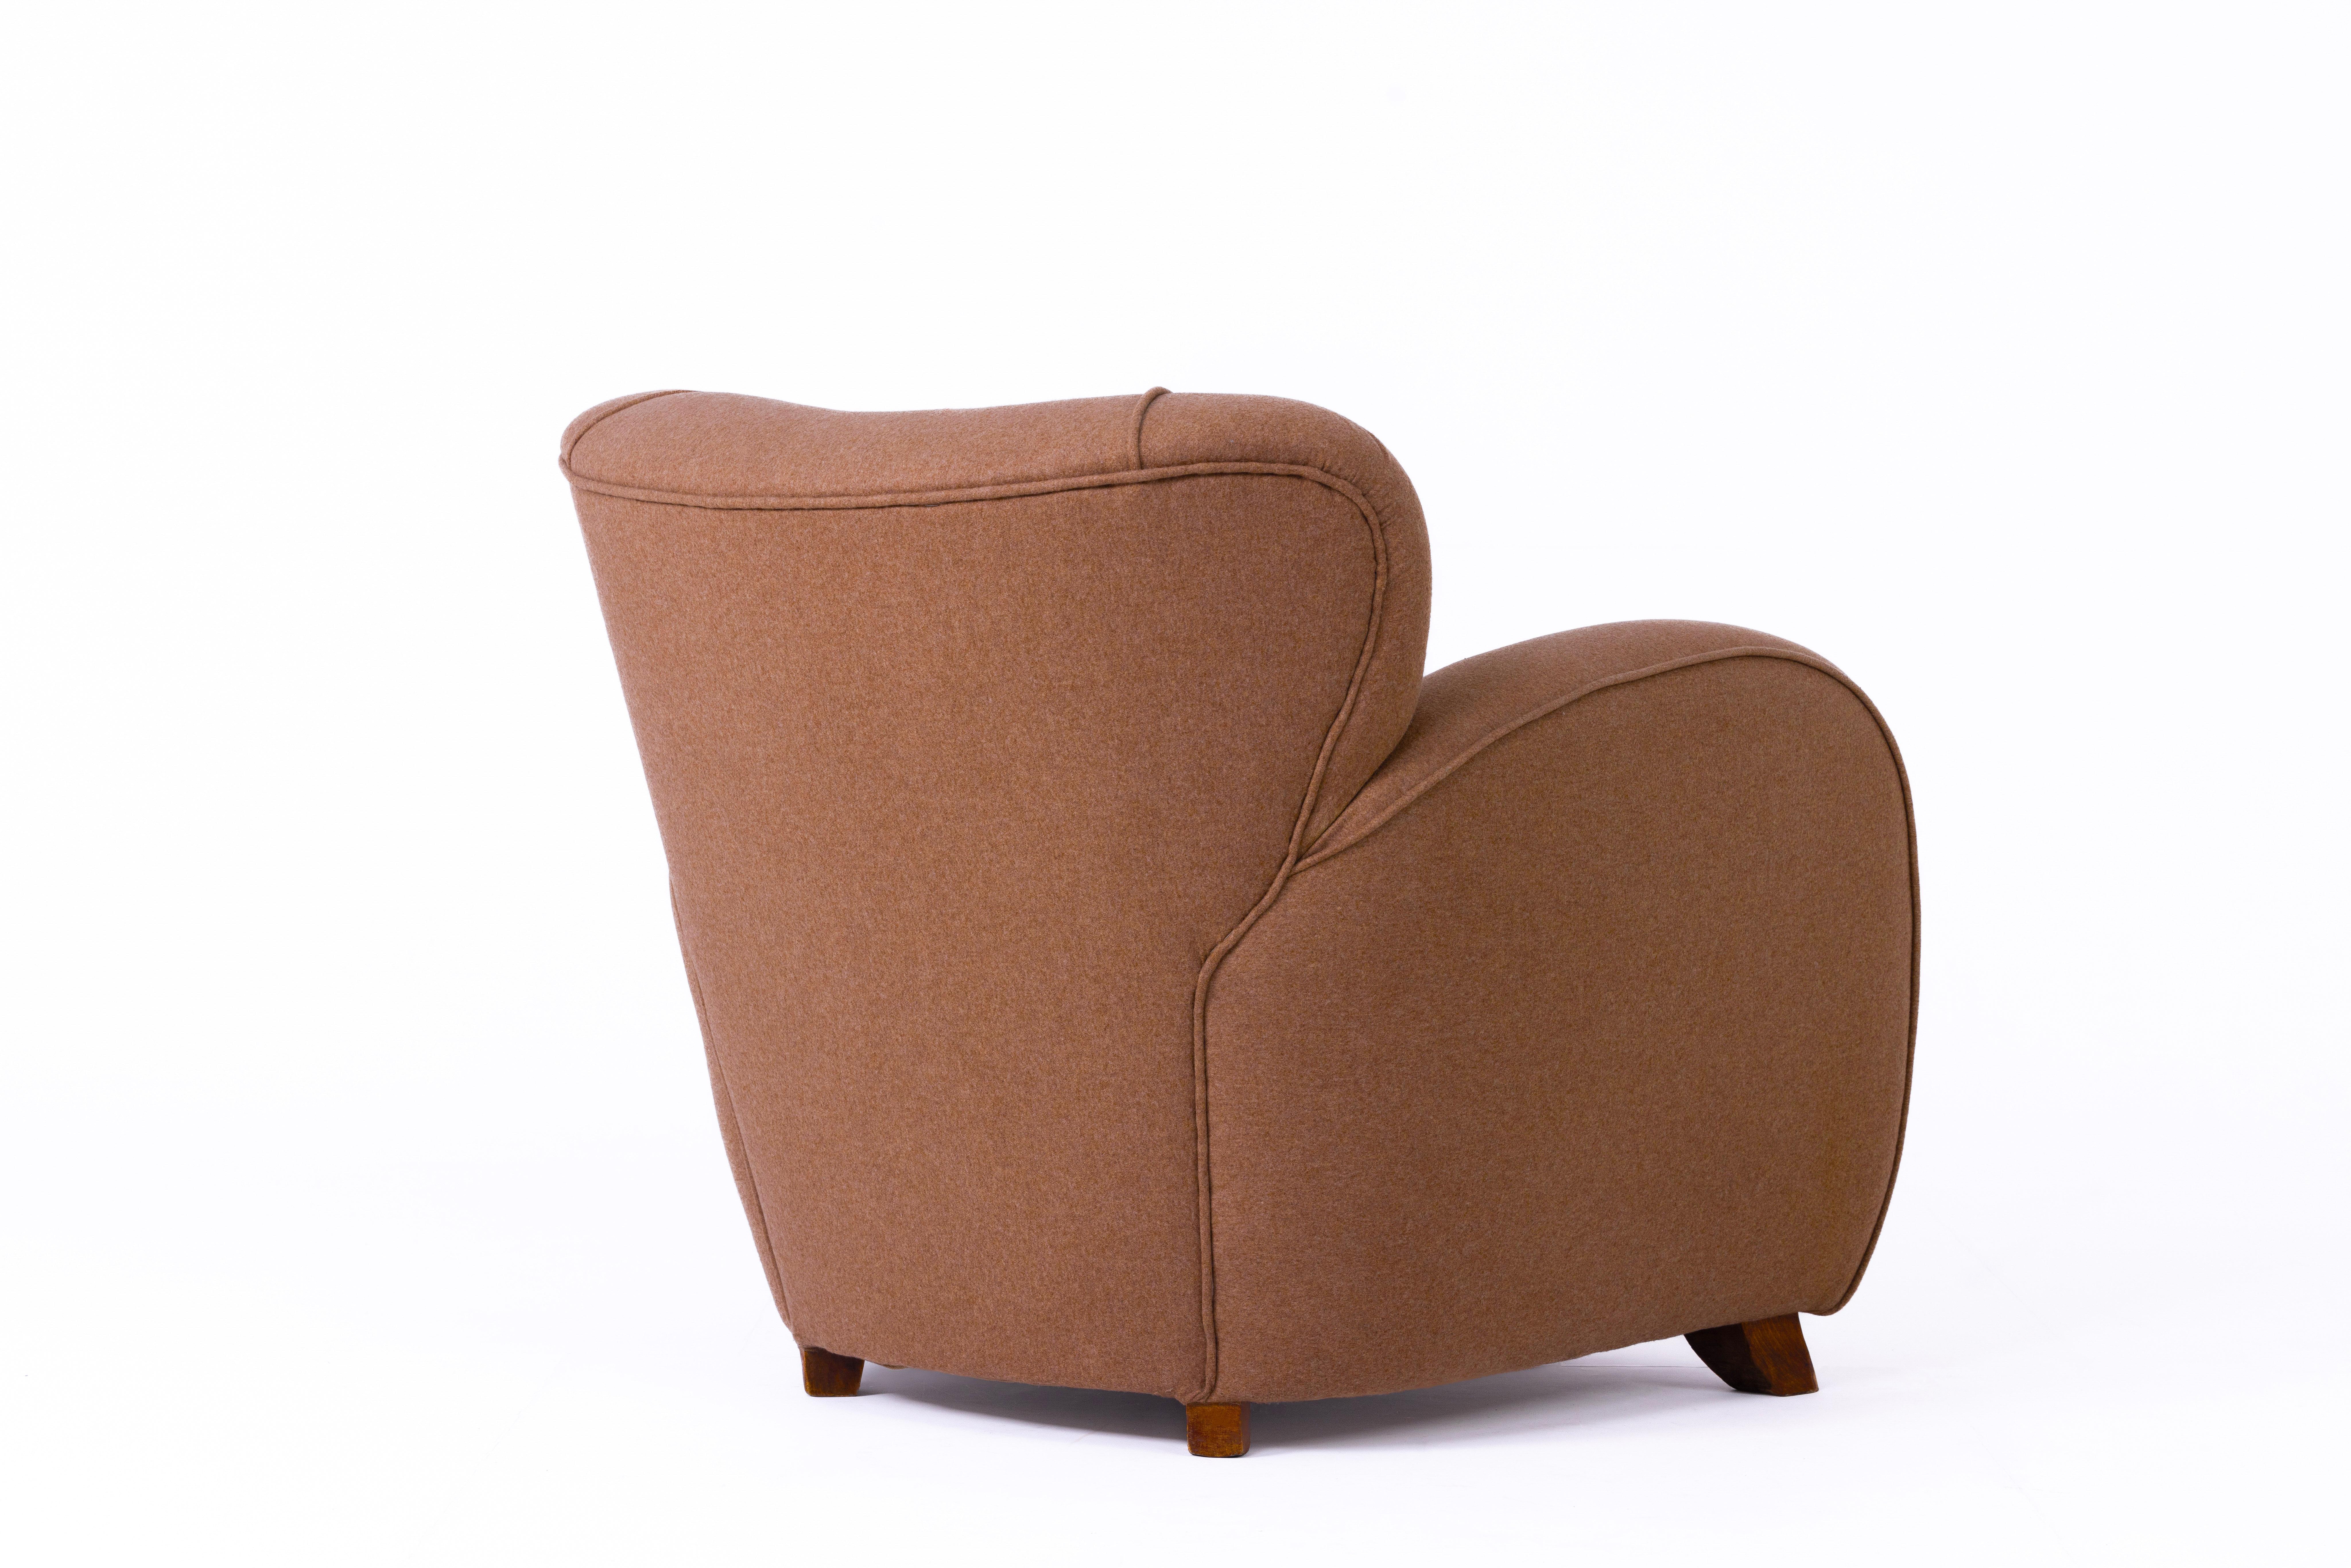 Szenografischer Art-Déco-Sessel, Schweden, 1920er Jahre, vollständig renoviert und mit brauner Hodsoll McKenzie-Wolle neu gepolstert. Beine aus Eiche